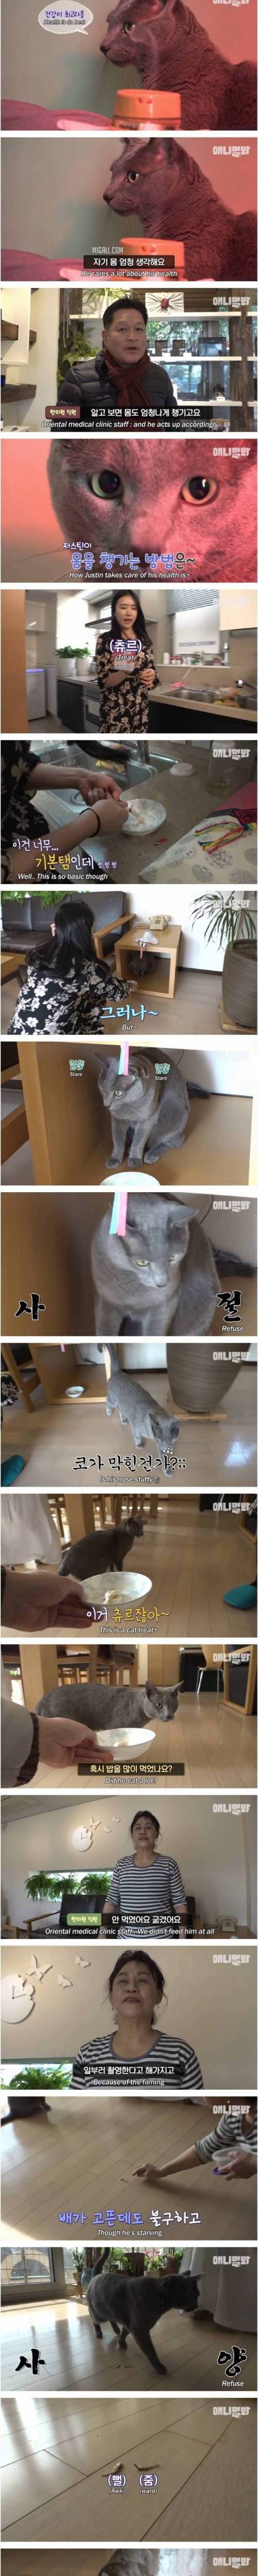 [스압] 츄르 대신 녹용 챙겨먹는 고양이